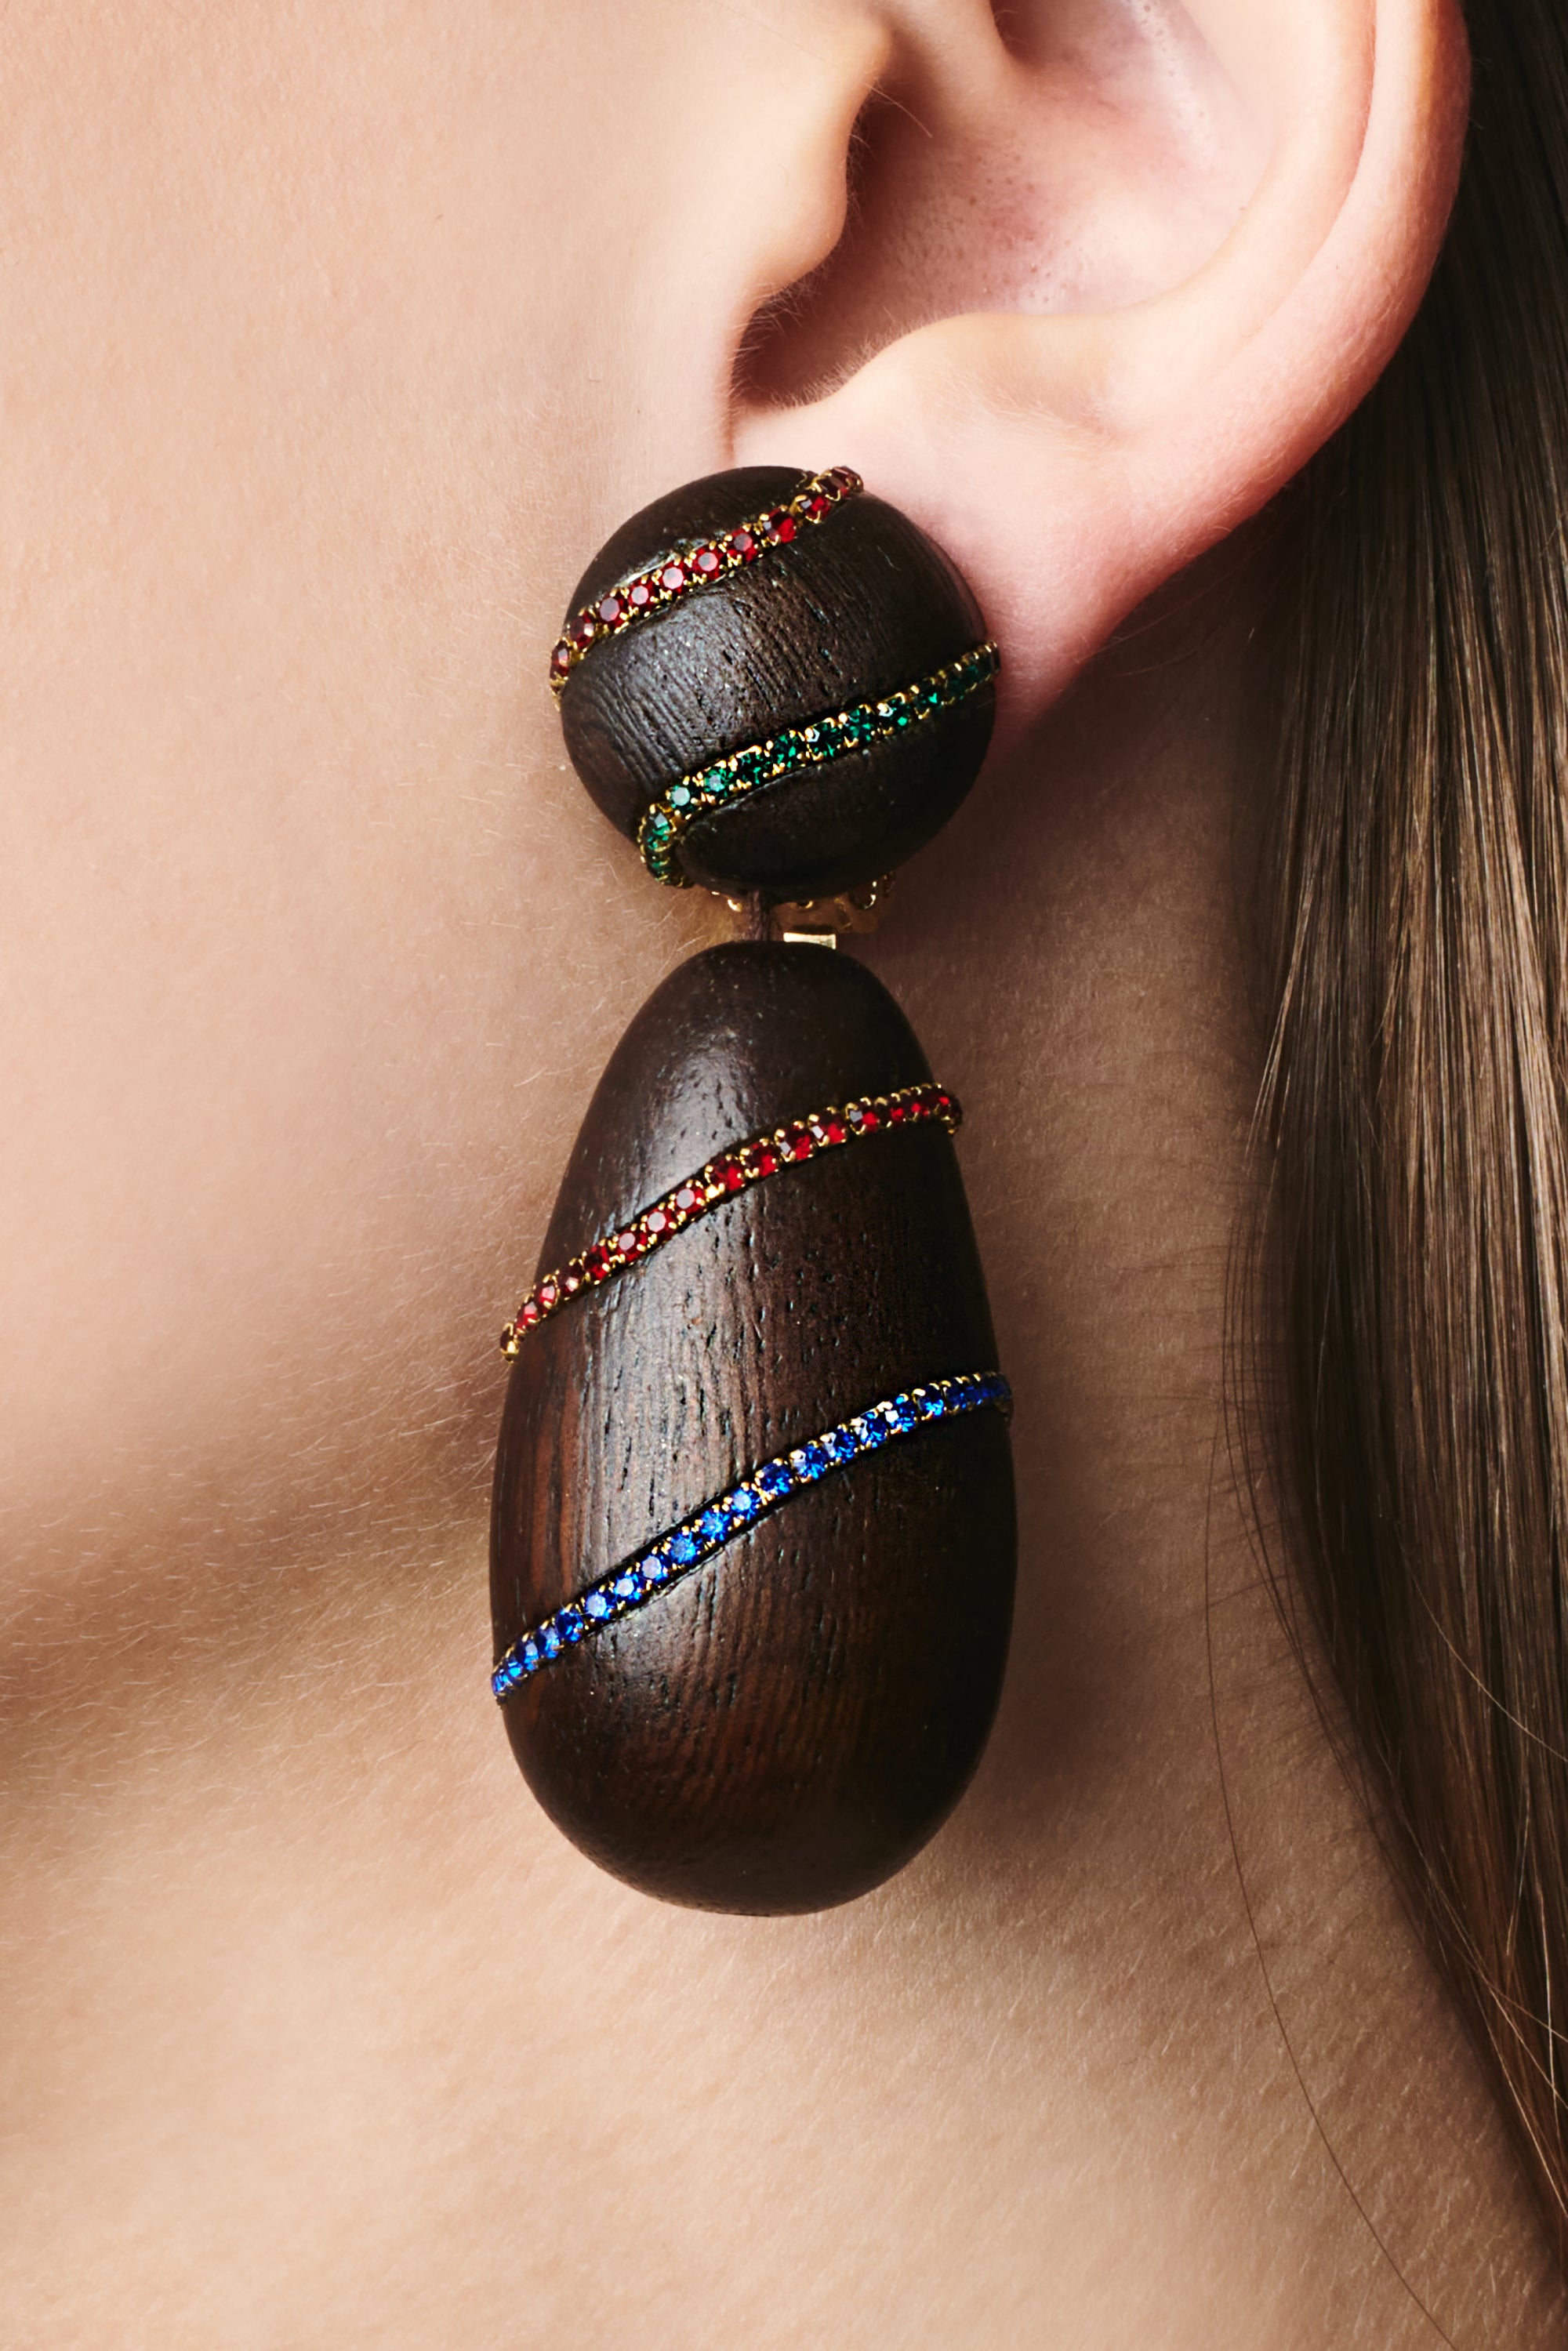 Hudson Earrings - Wood / Crystals